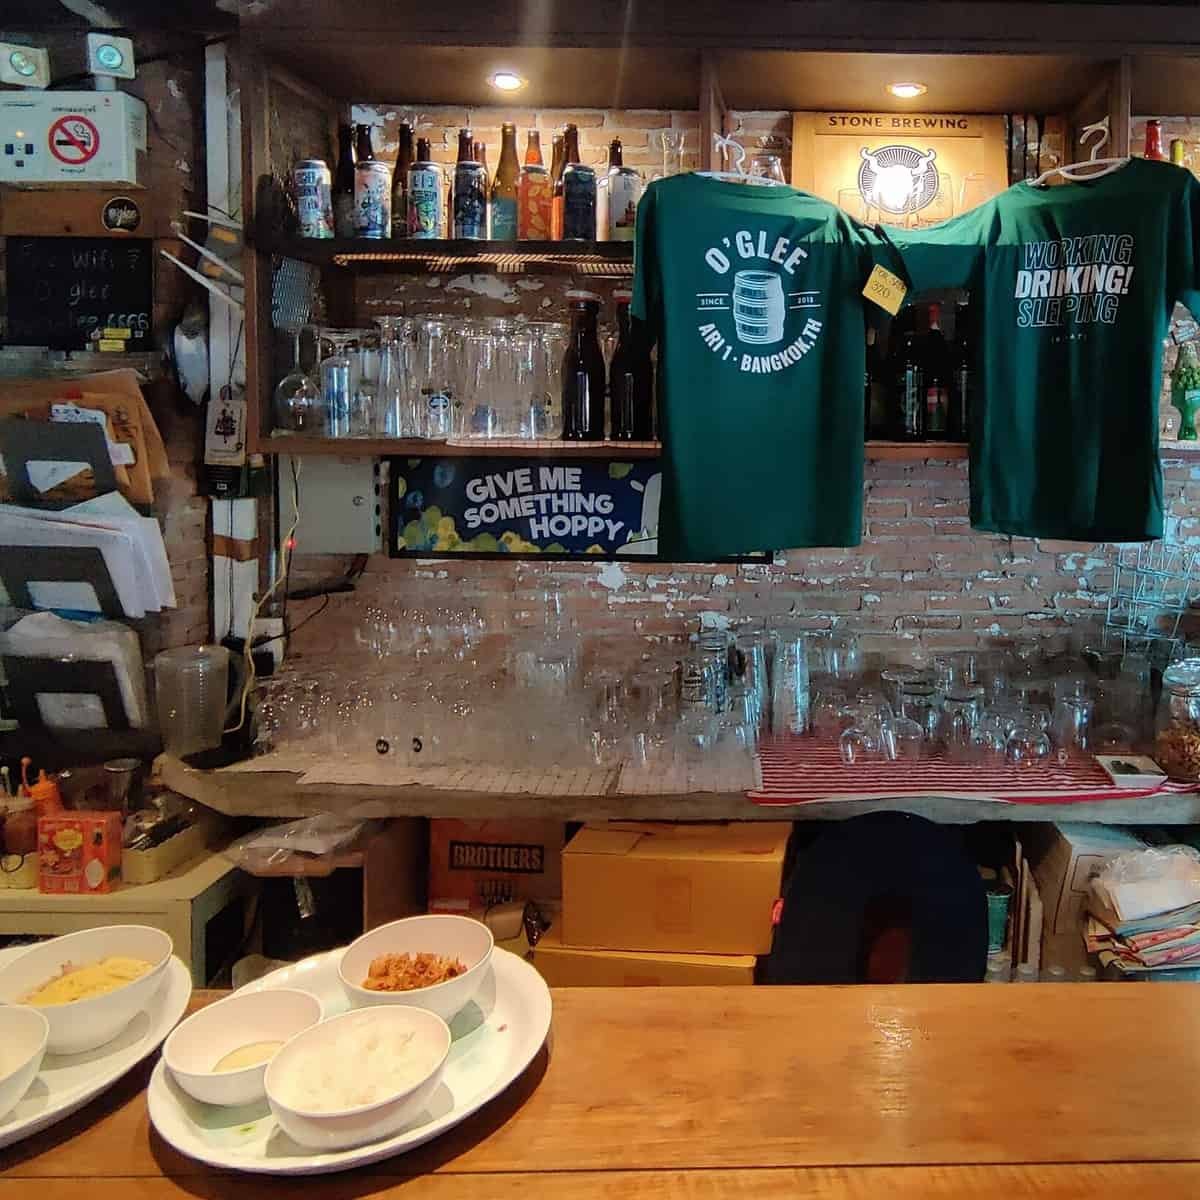 O'glee craft beer bar and restaurant Bangkok Thailand